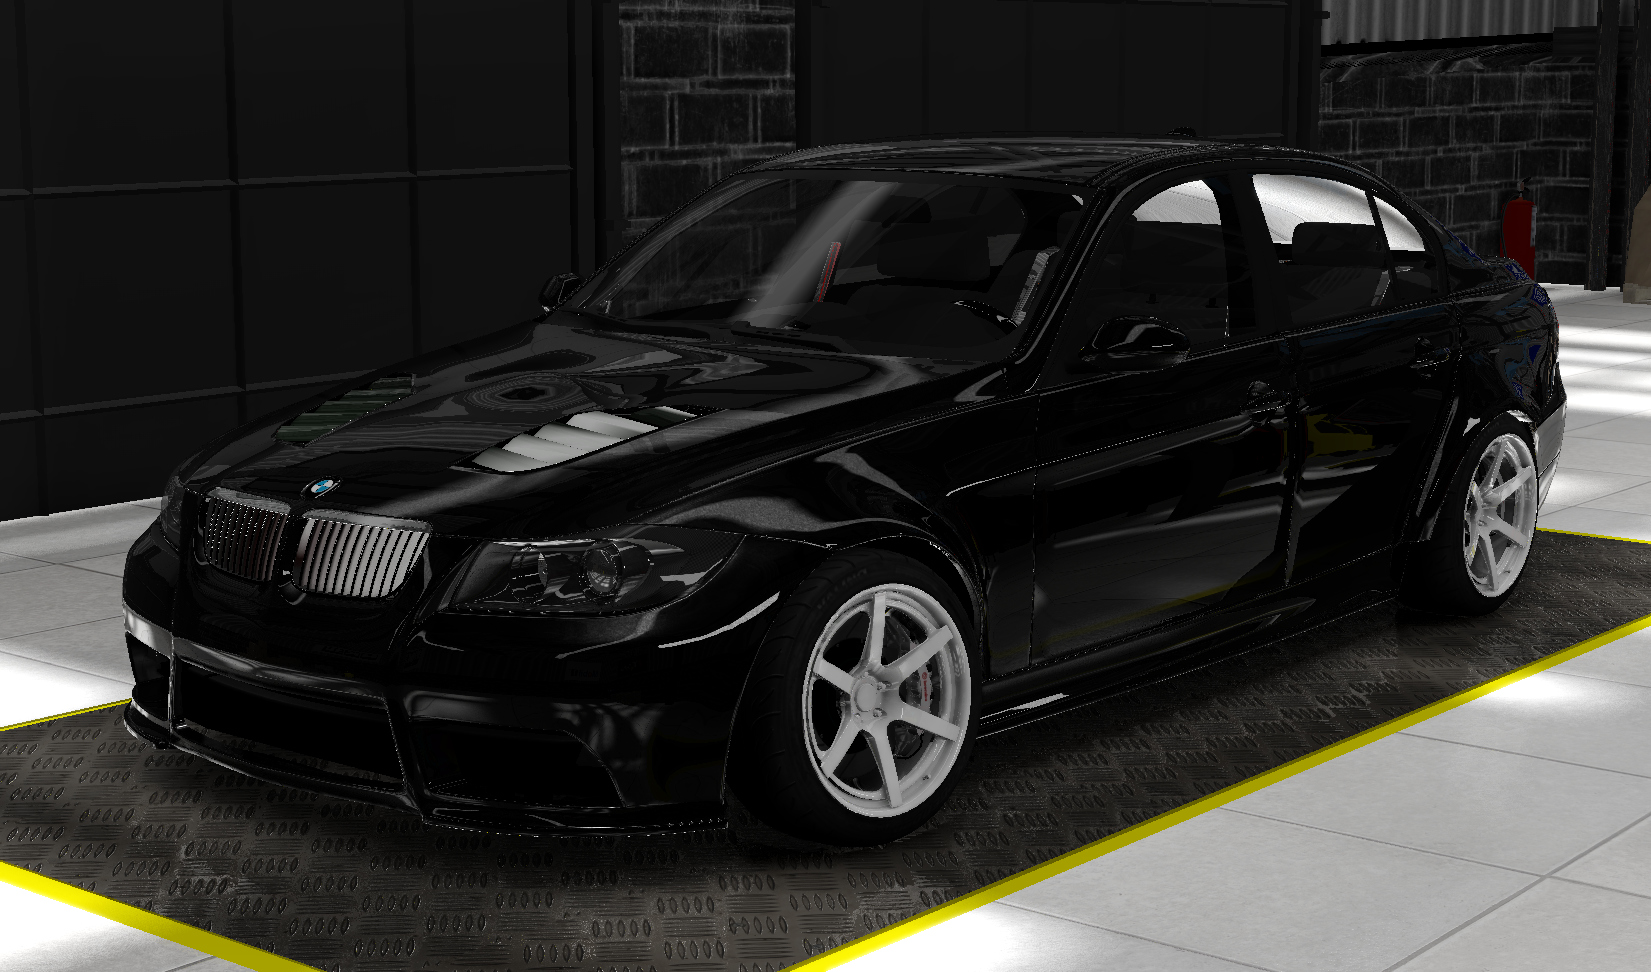 BMW E90 Drift, skin black